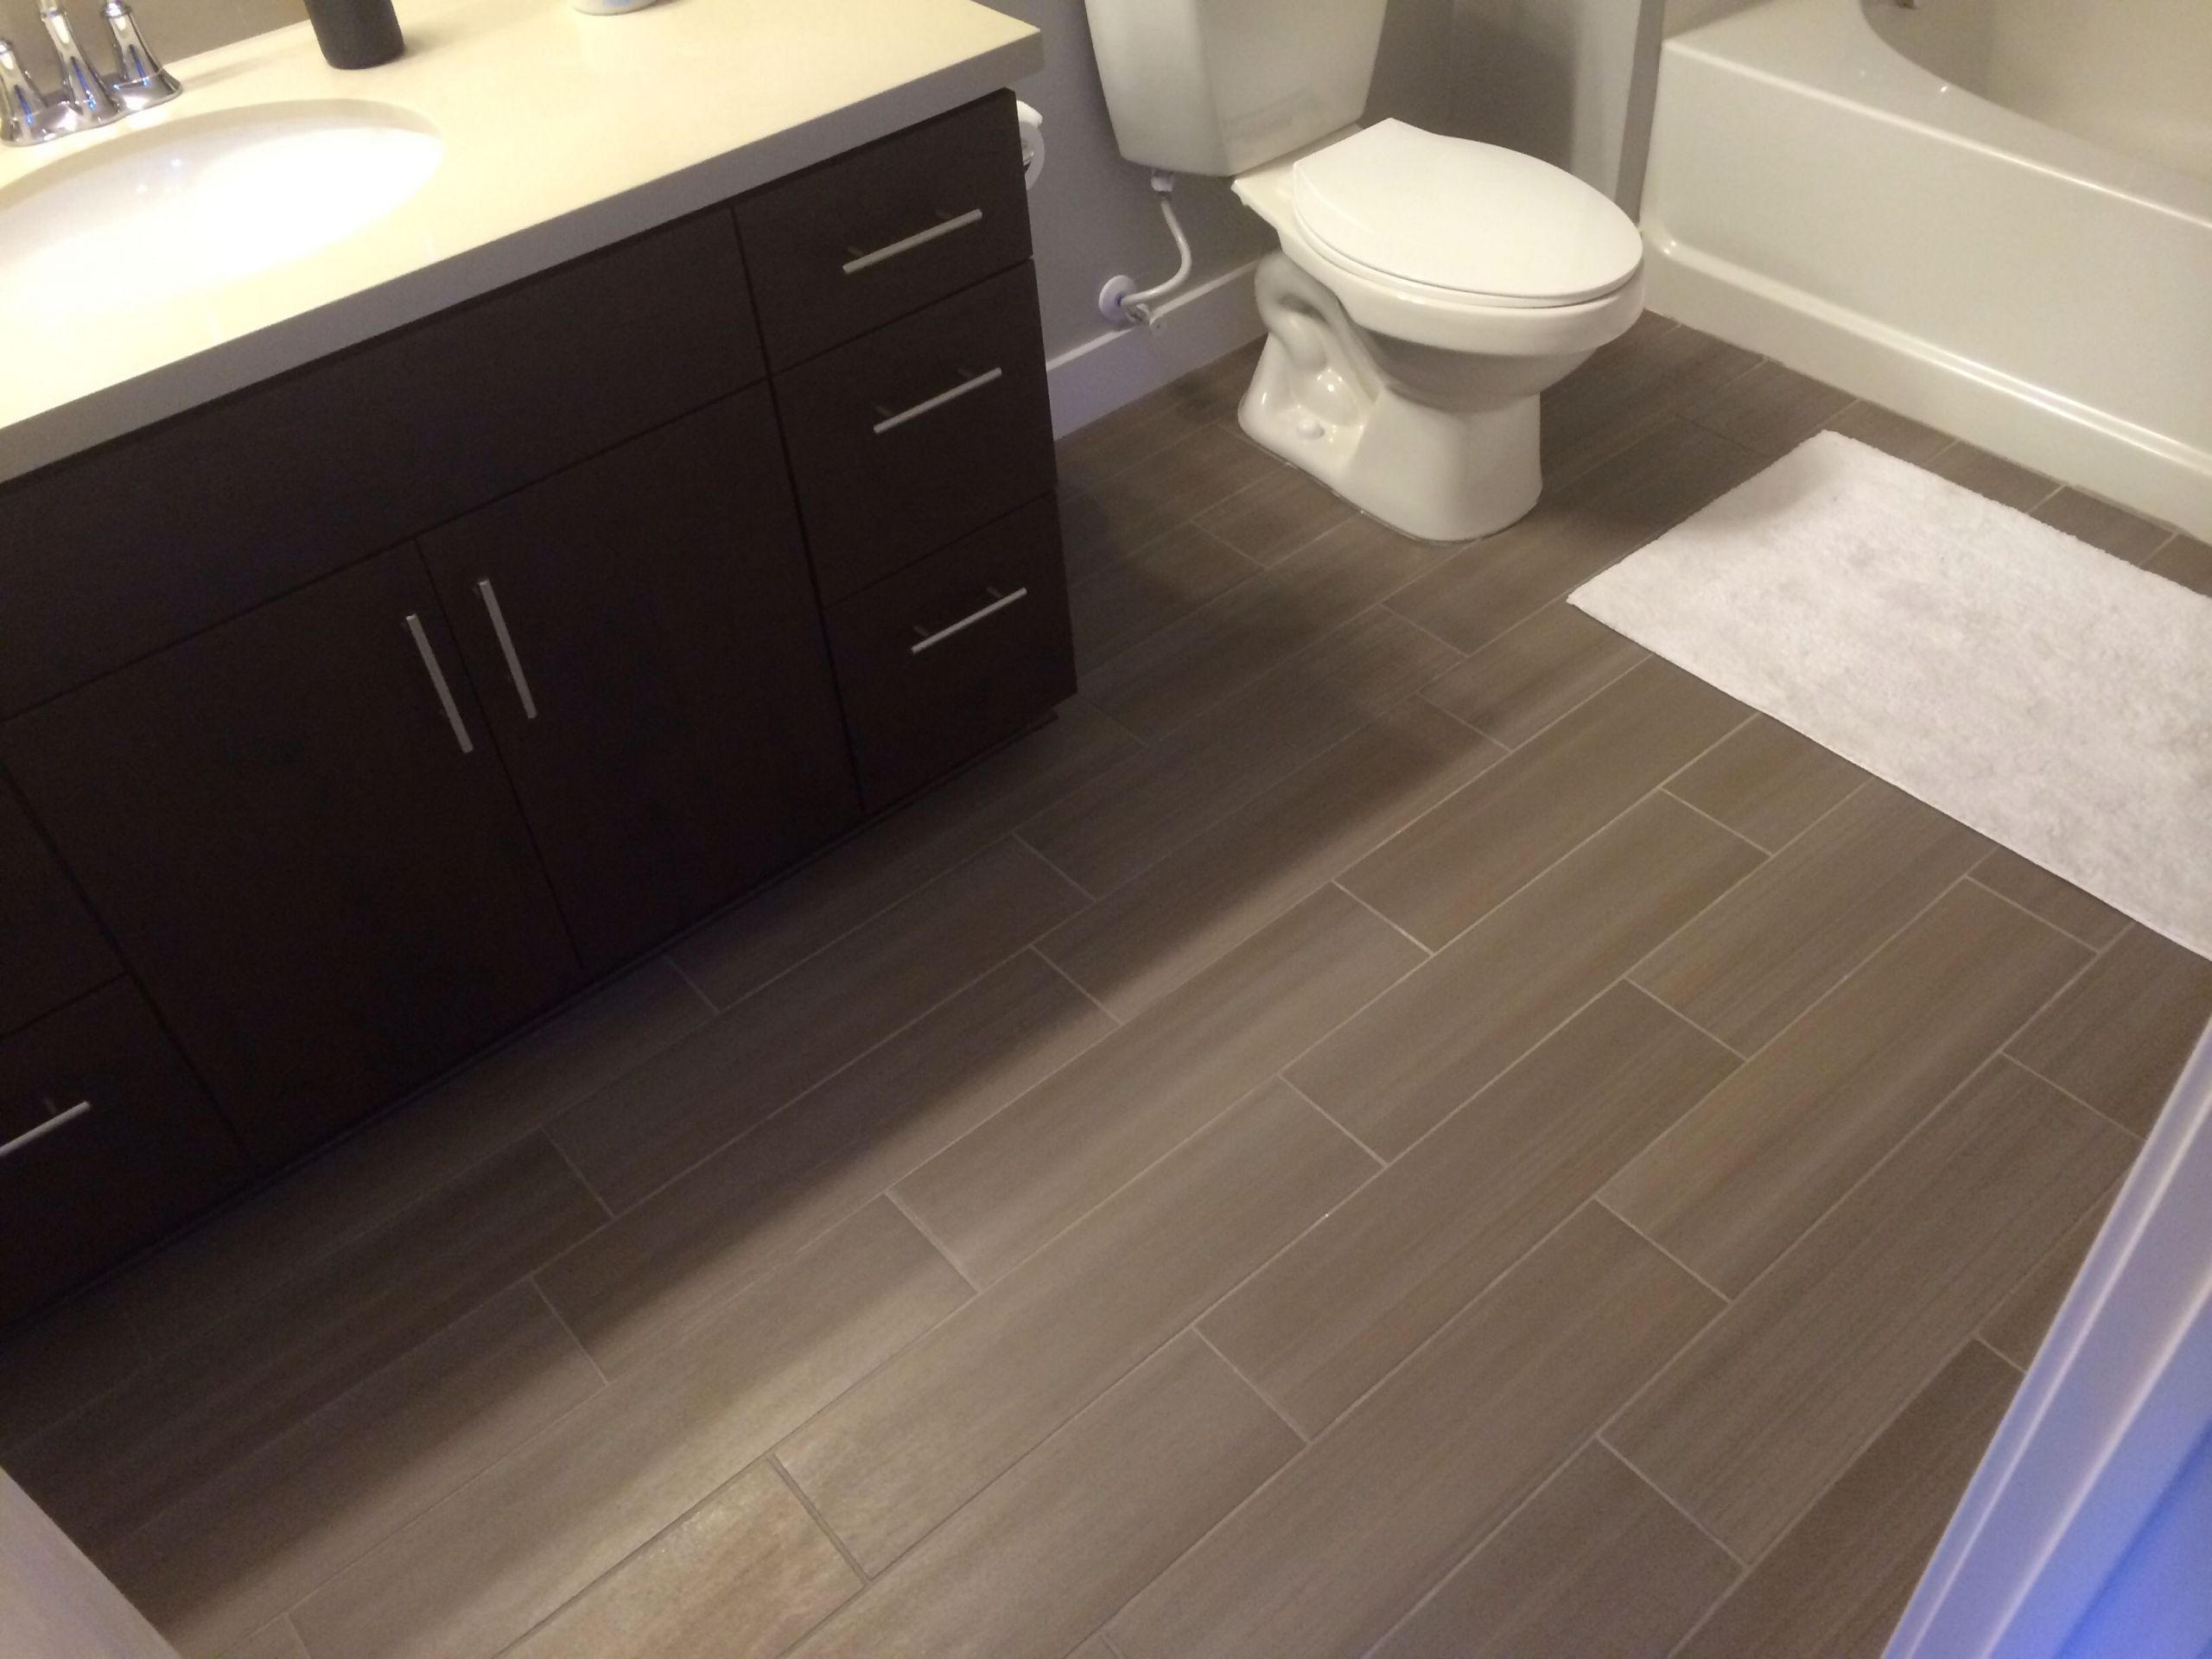 Tiles For Small Bathroom Floor Luxury Best 25 Bathroom Flooring Ideas On Pinterest Of Tiles For Small Bathroom Floor Scaled 